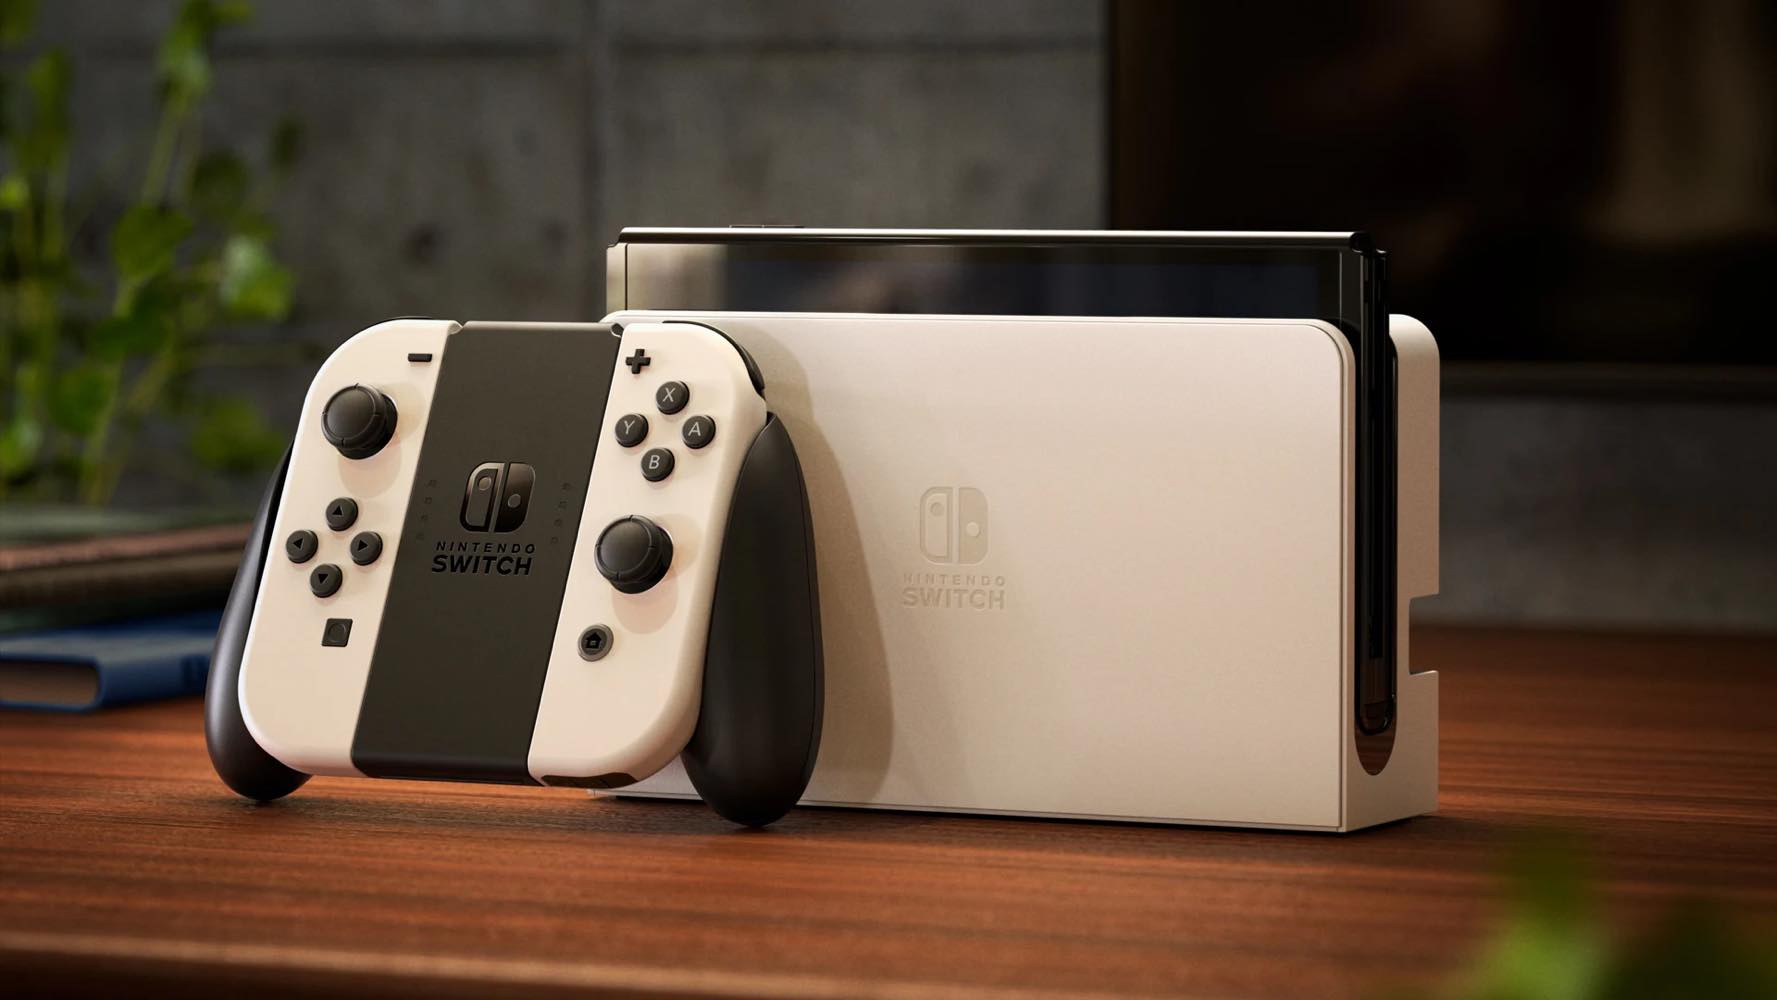 NVIDIAの新たな求人情報が次期｢Nintendo Switch｣の存在を示唆か